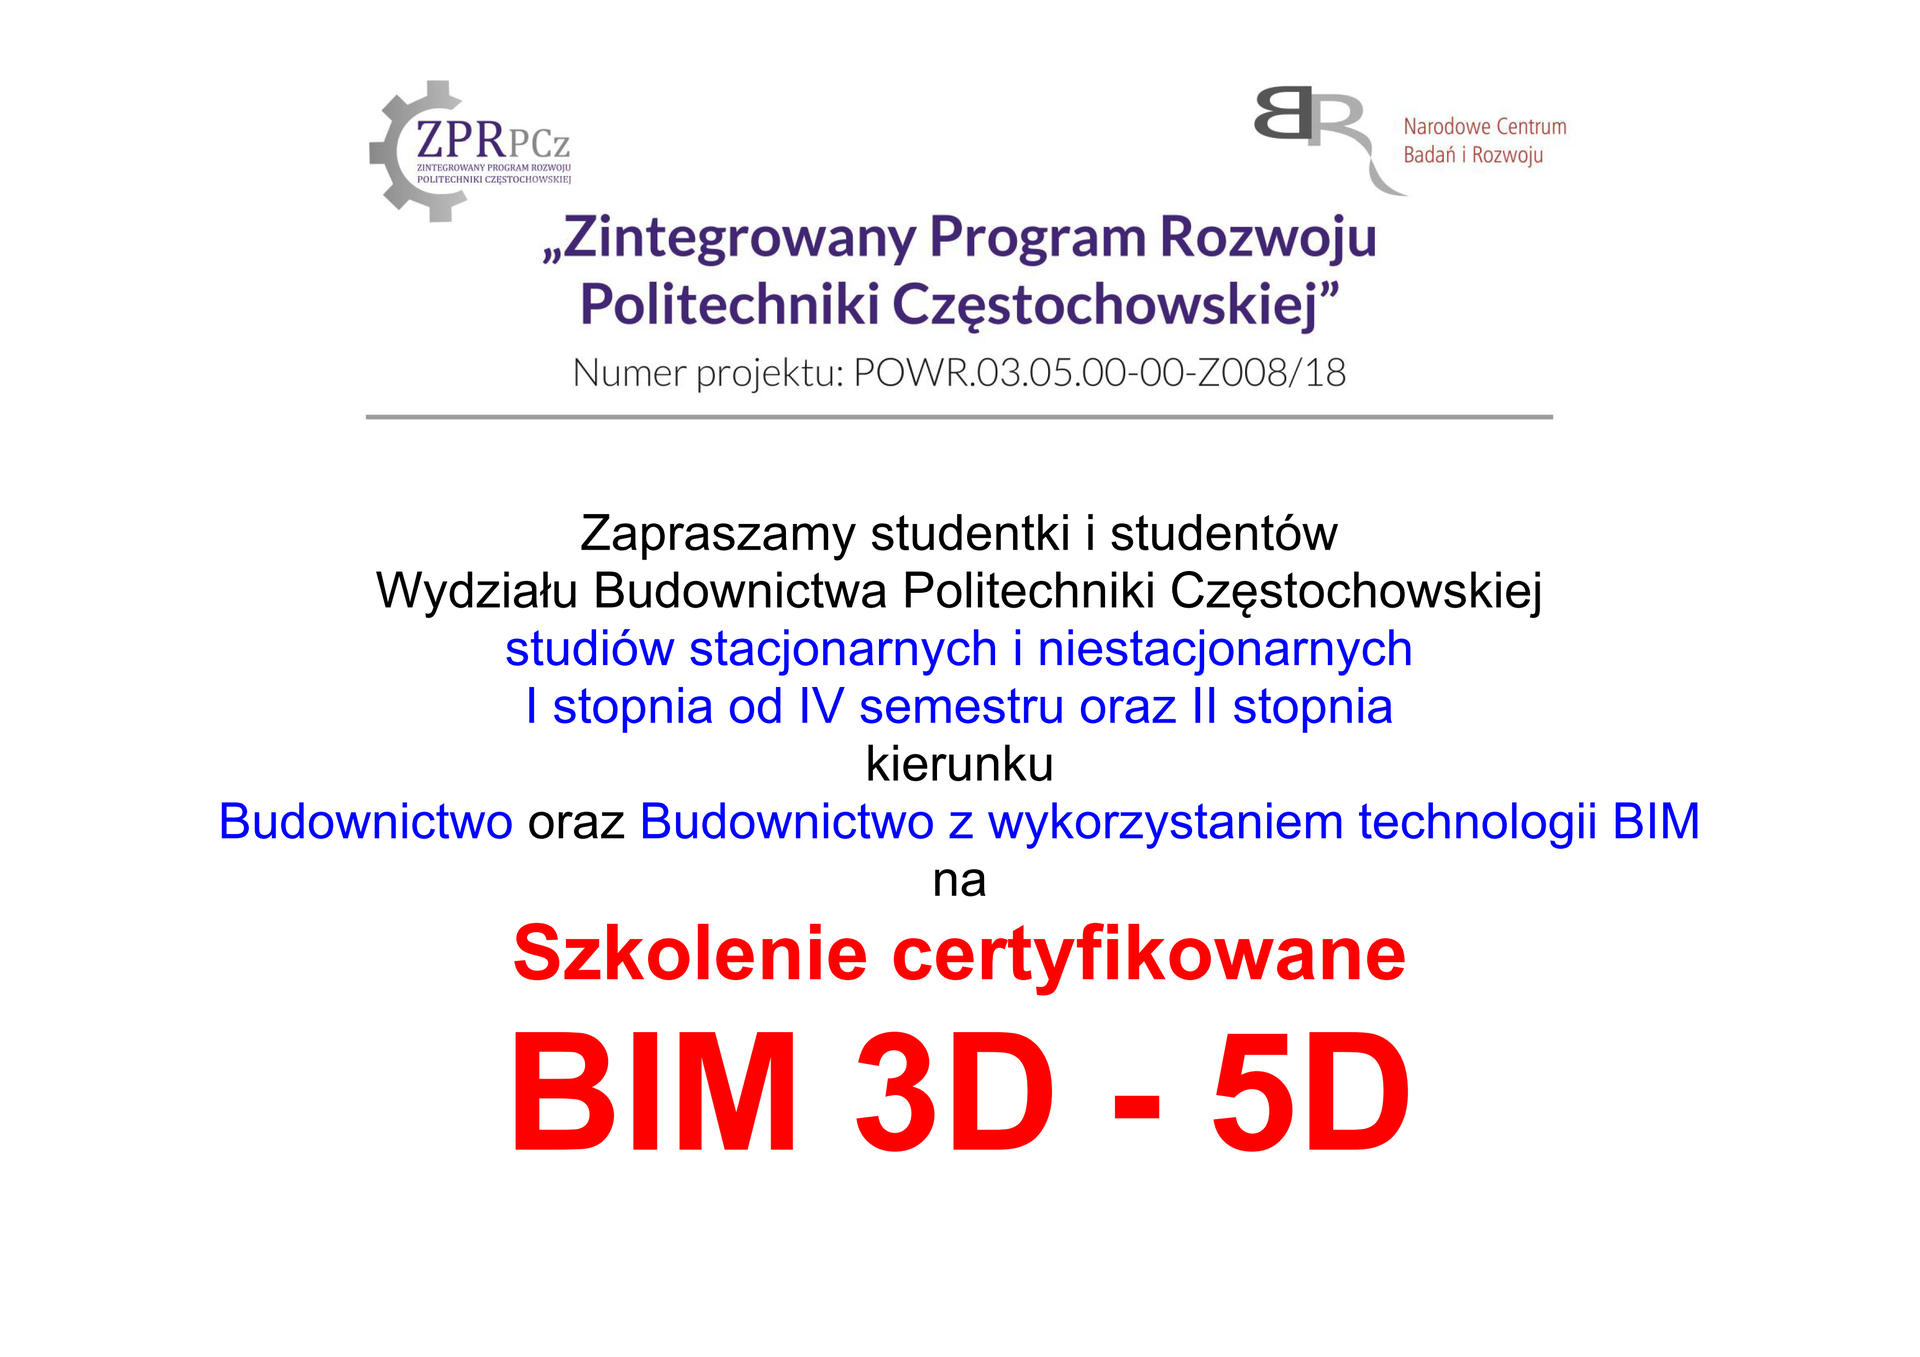 plakat informujący o rozpoczeciu rekrutacji na szkolenie BIM3D-5D